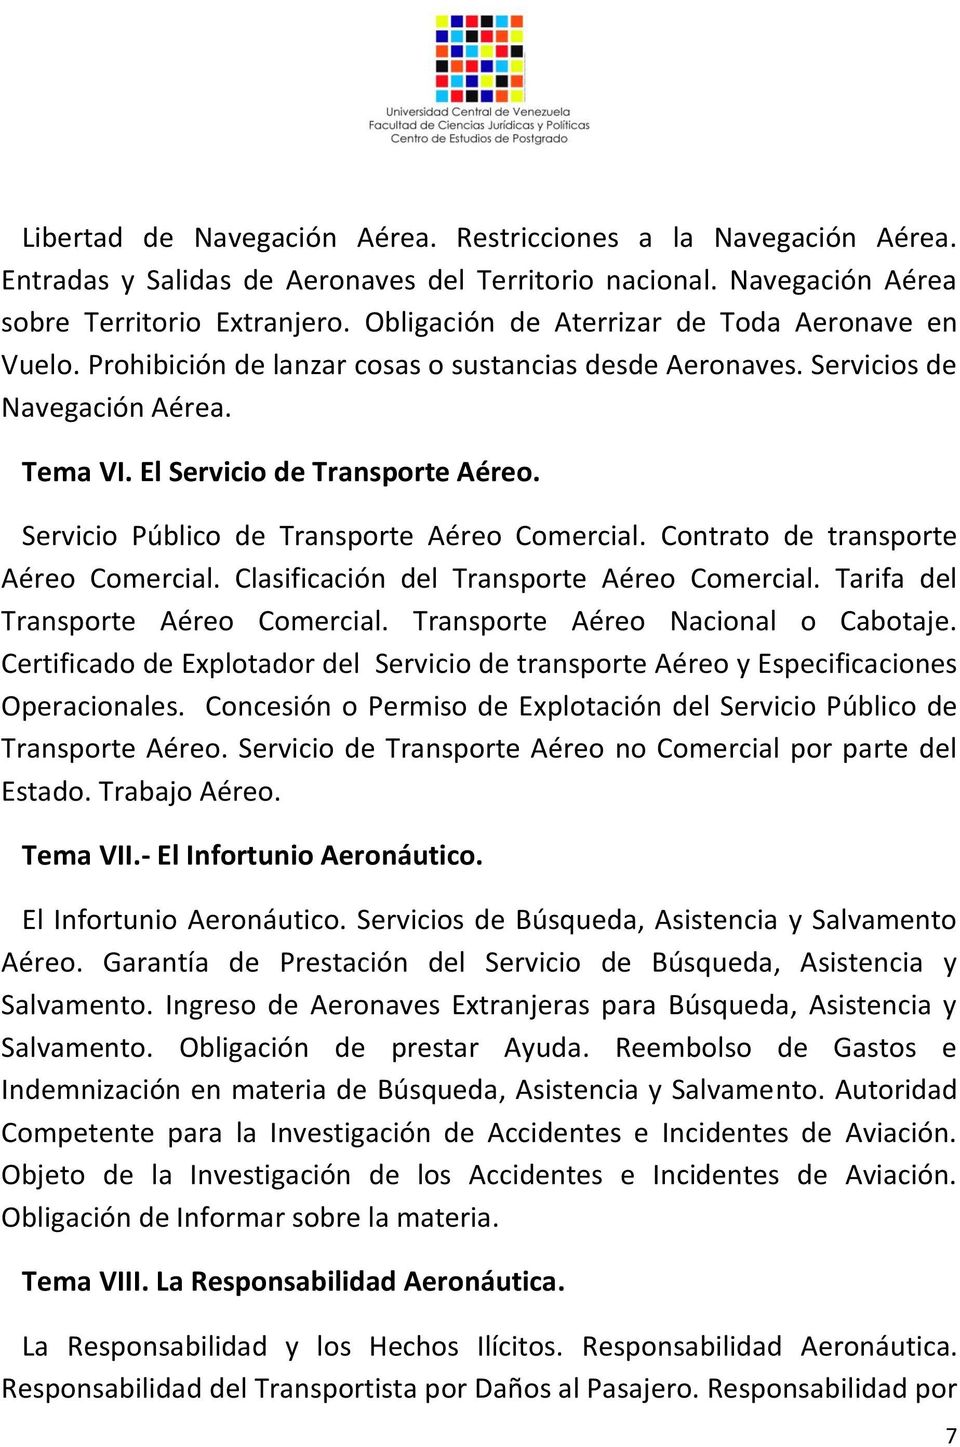 Servicio Público de Transporte Aéreo Comercial. Contrato de transporte Aéreo Comercial. Clasificación del Transporte Aéreo Comercial. Tarifa del Transporte Aéreo Comercial.